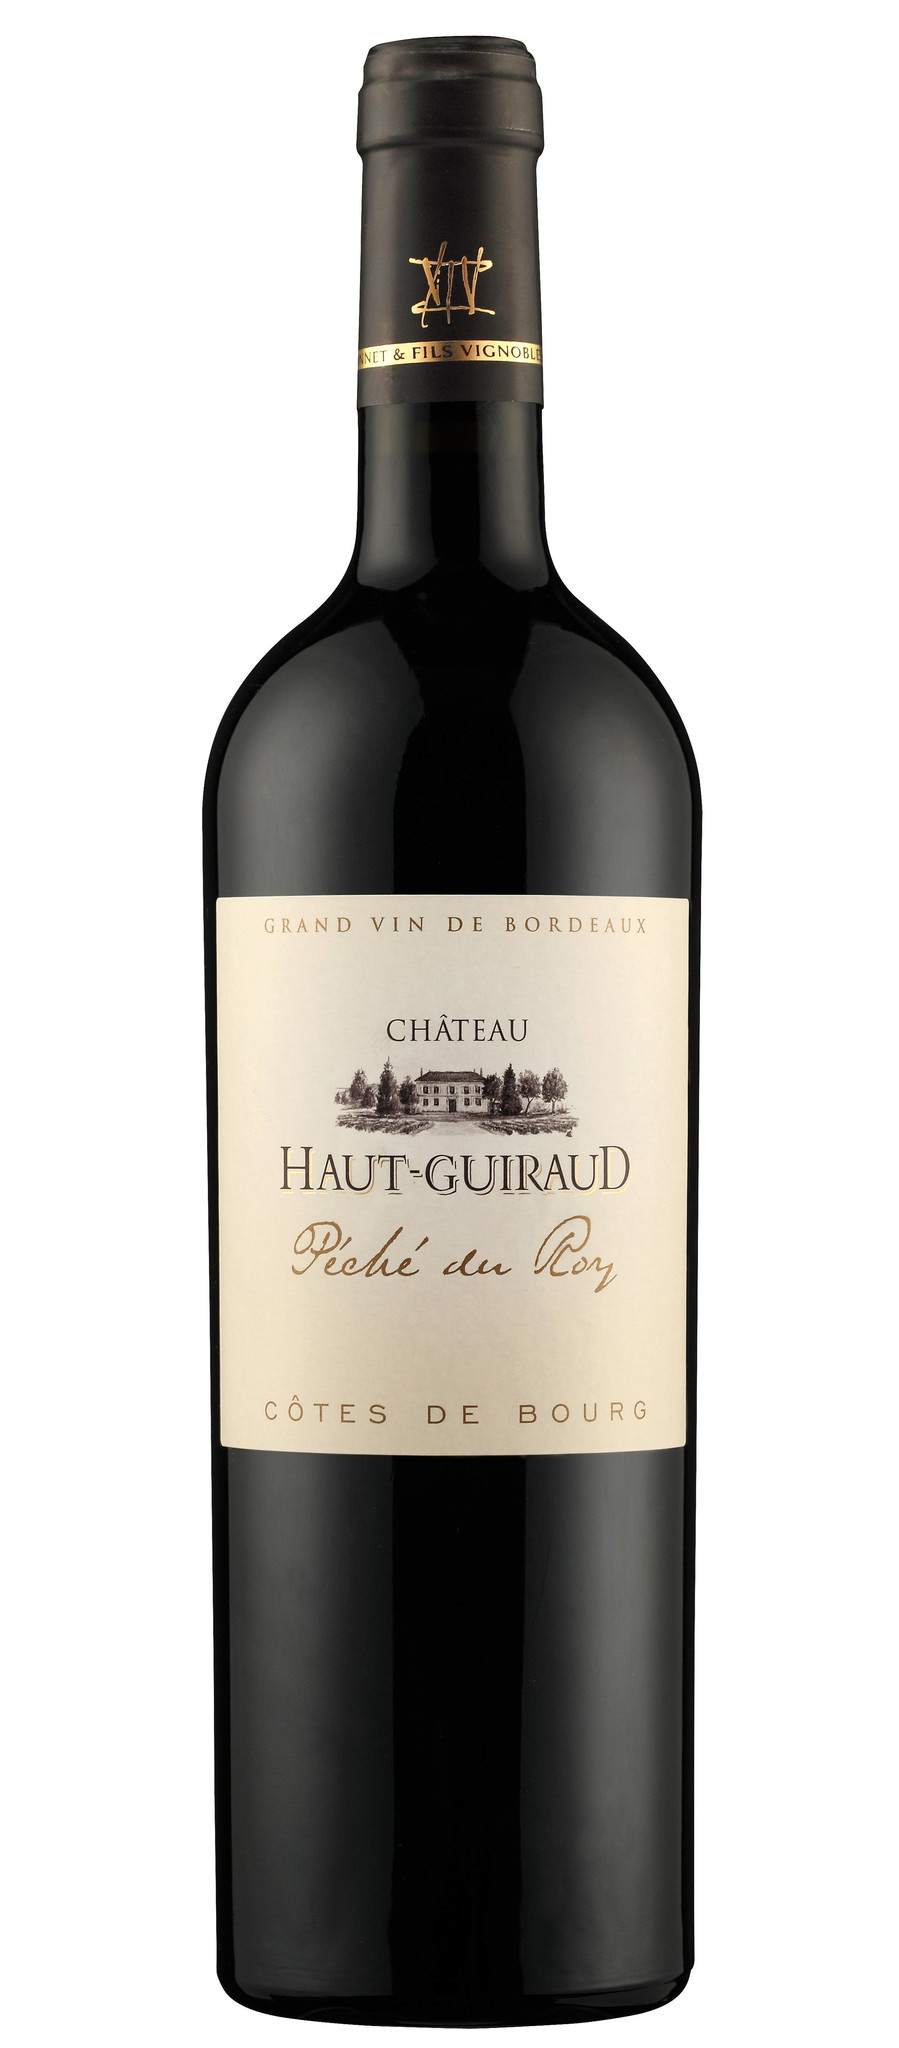 Château Haut-Guiraud Péche du Roy 2017